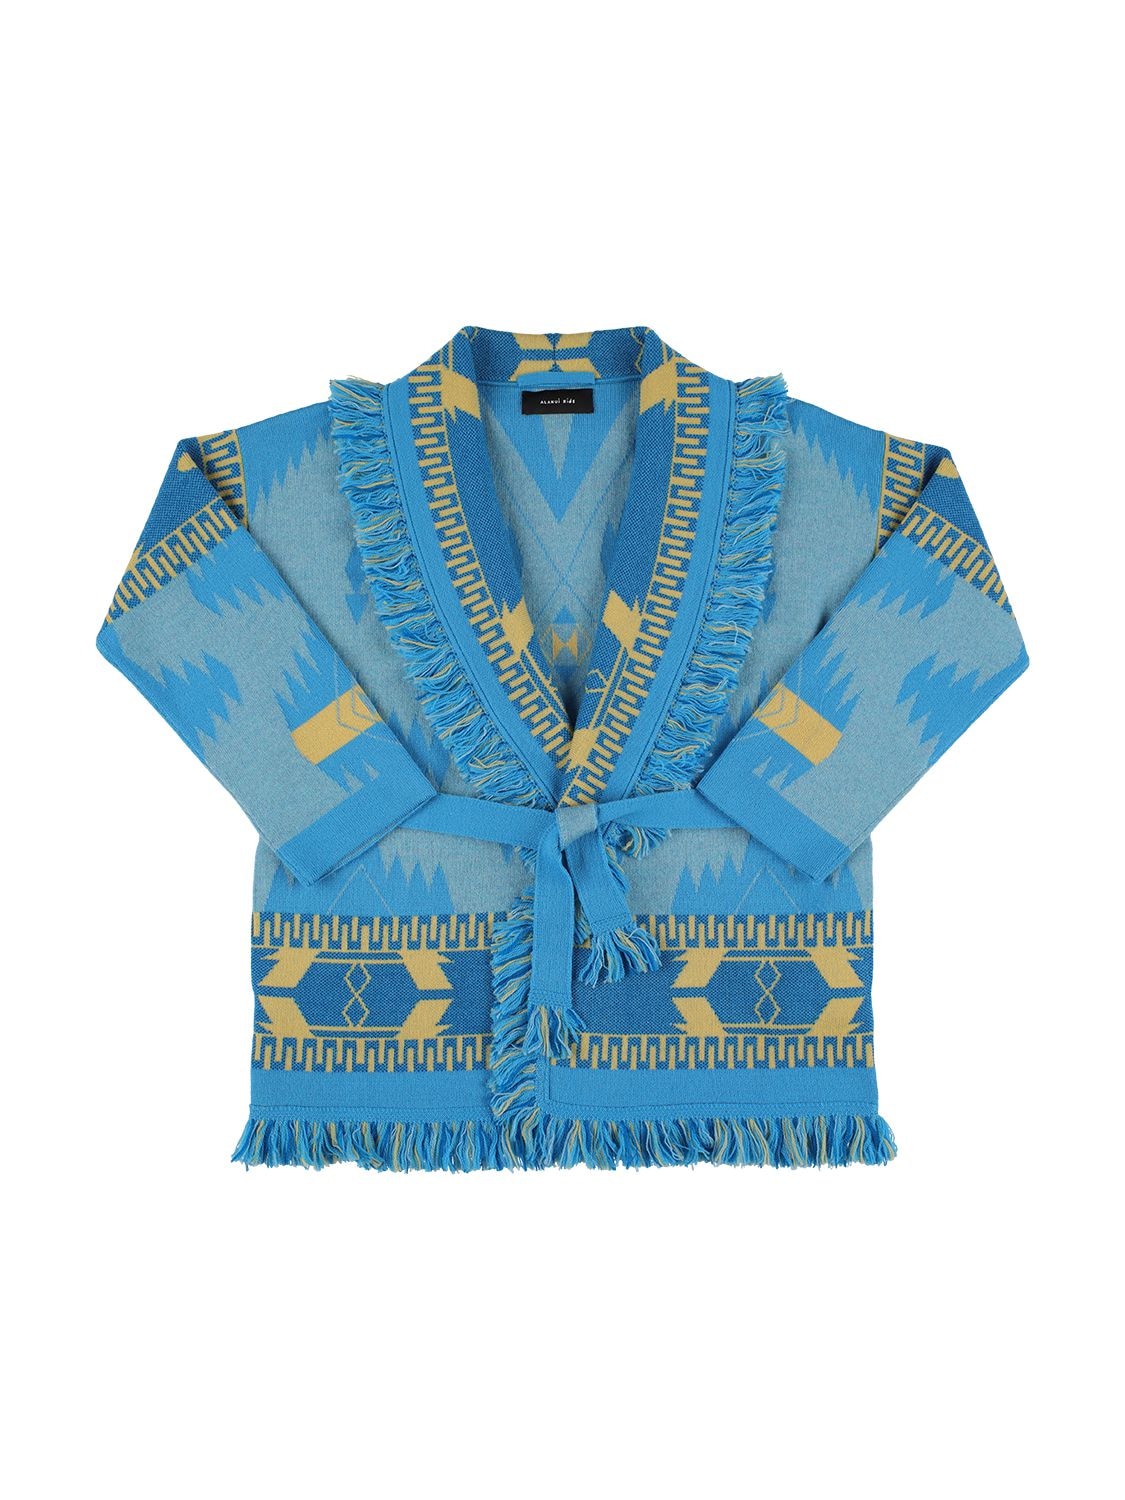 Alanui Kids' Wool Jacquard Knit Jacket In Blue